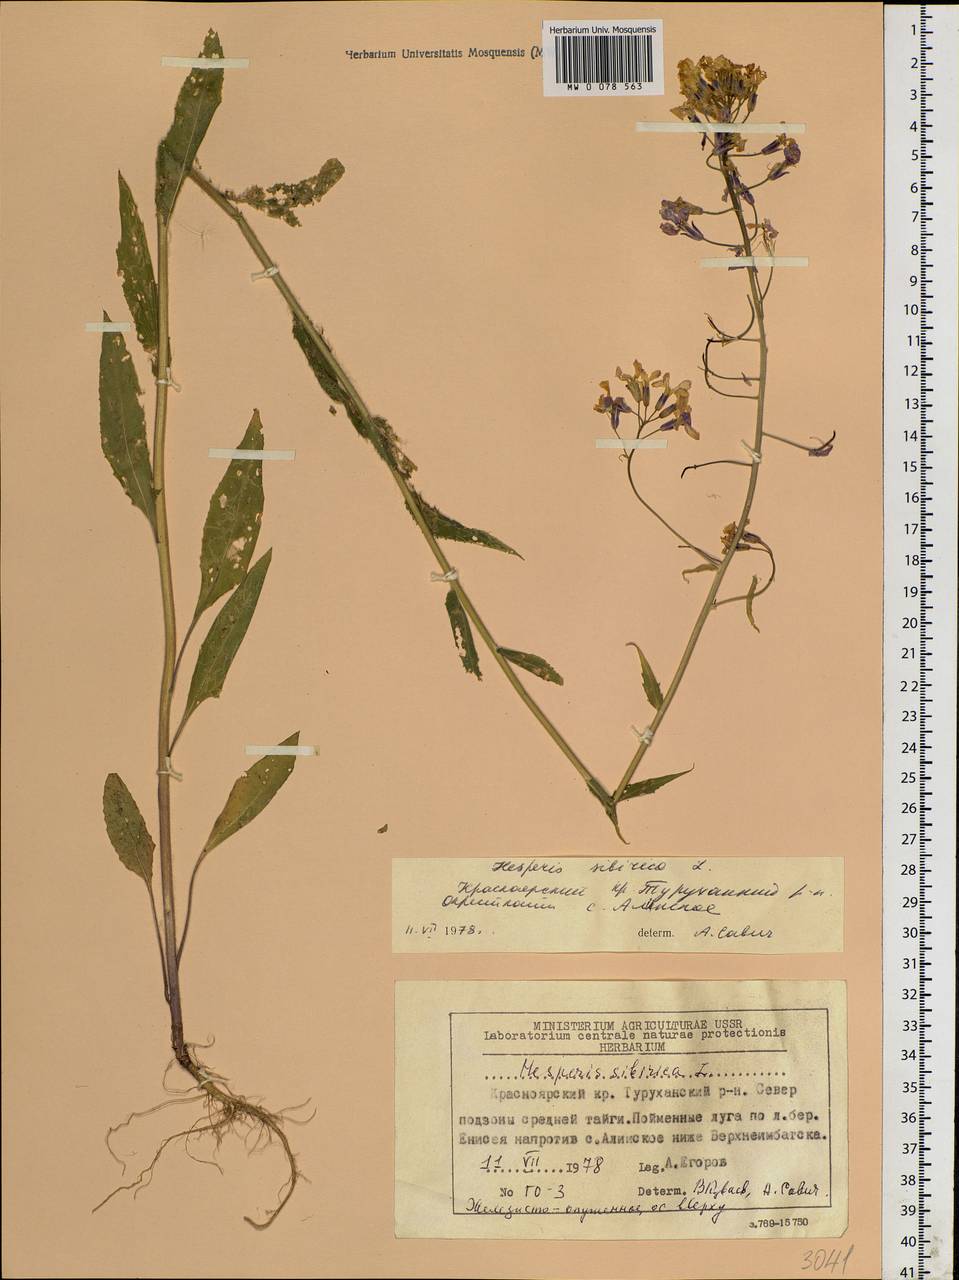 Hesperis sibirica L., Siberia, Central Siberia (S3) (Russia)